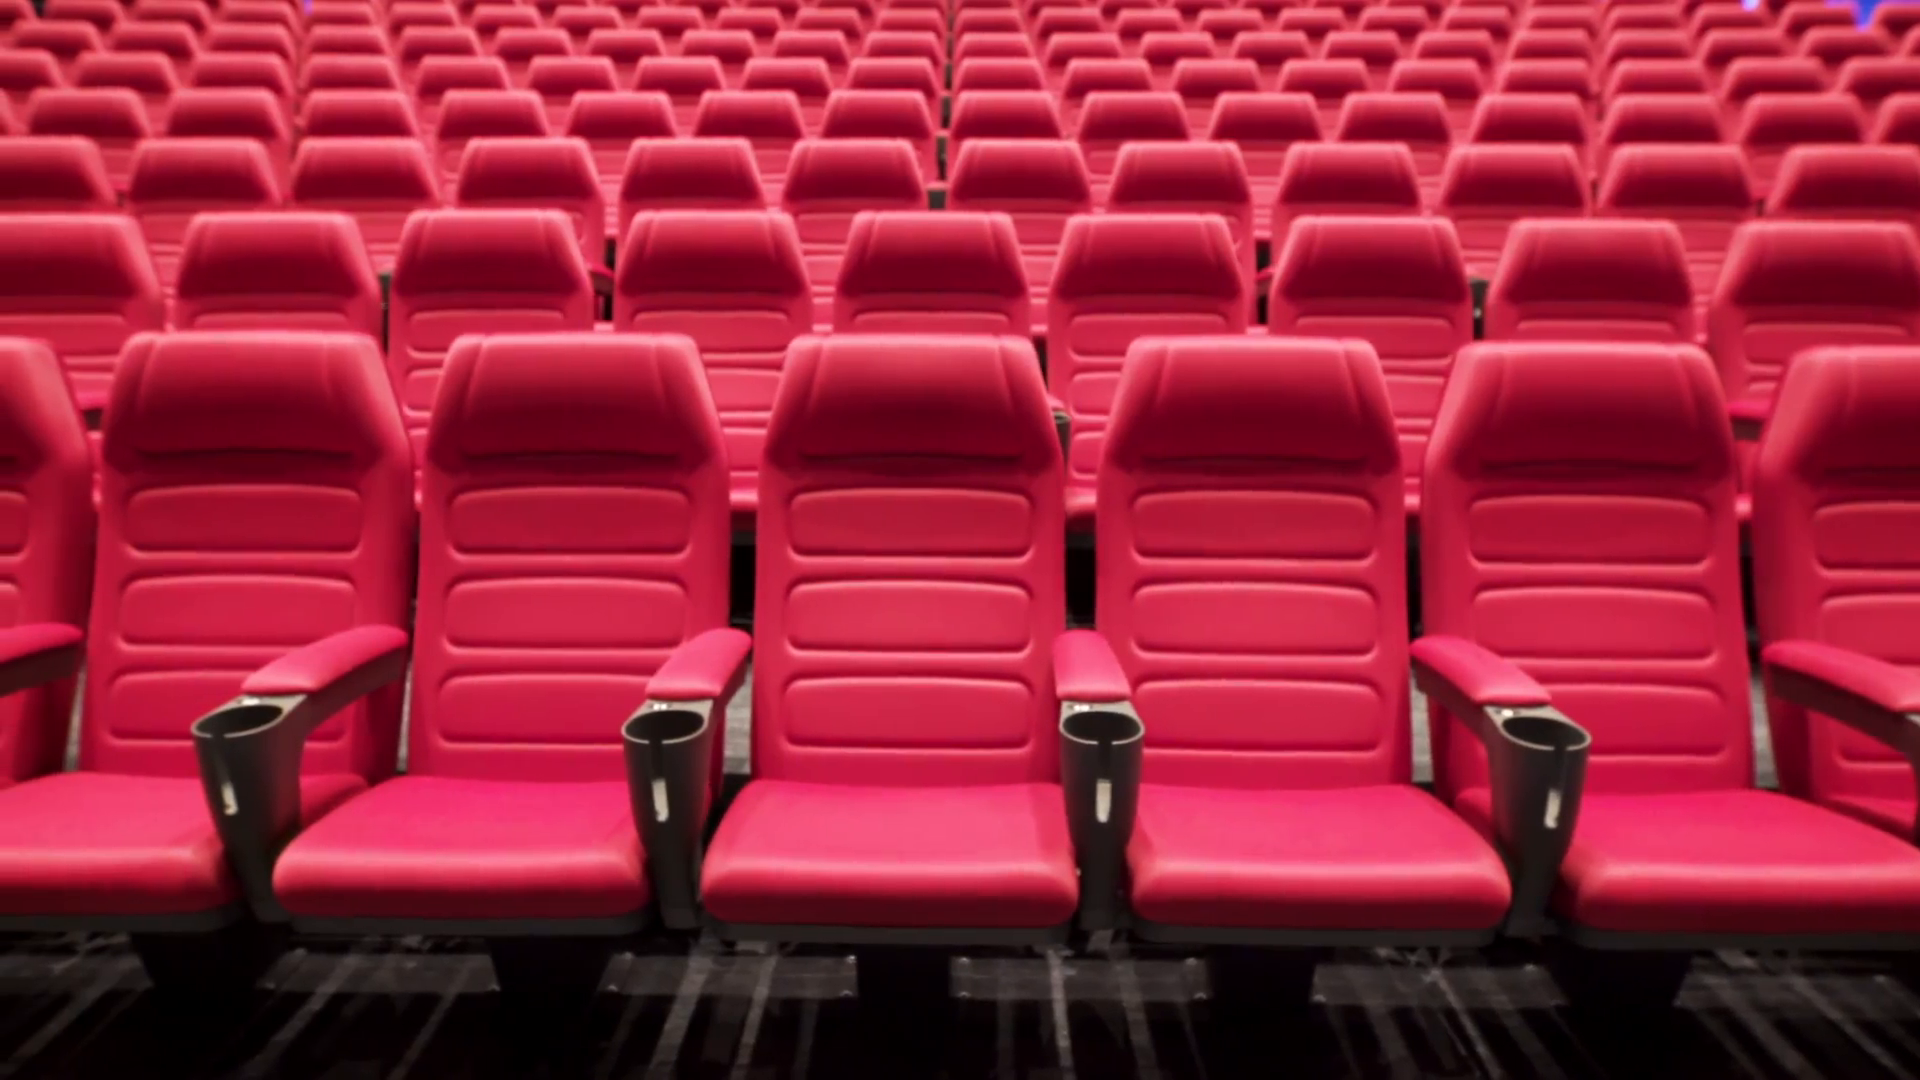 Theater seating. Кресла в кинотеатре. Кресла в театре. Кинозал сиденья. Кресла для кинозала.